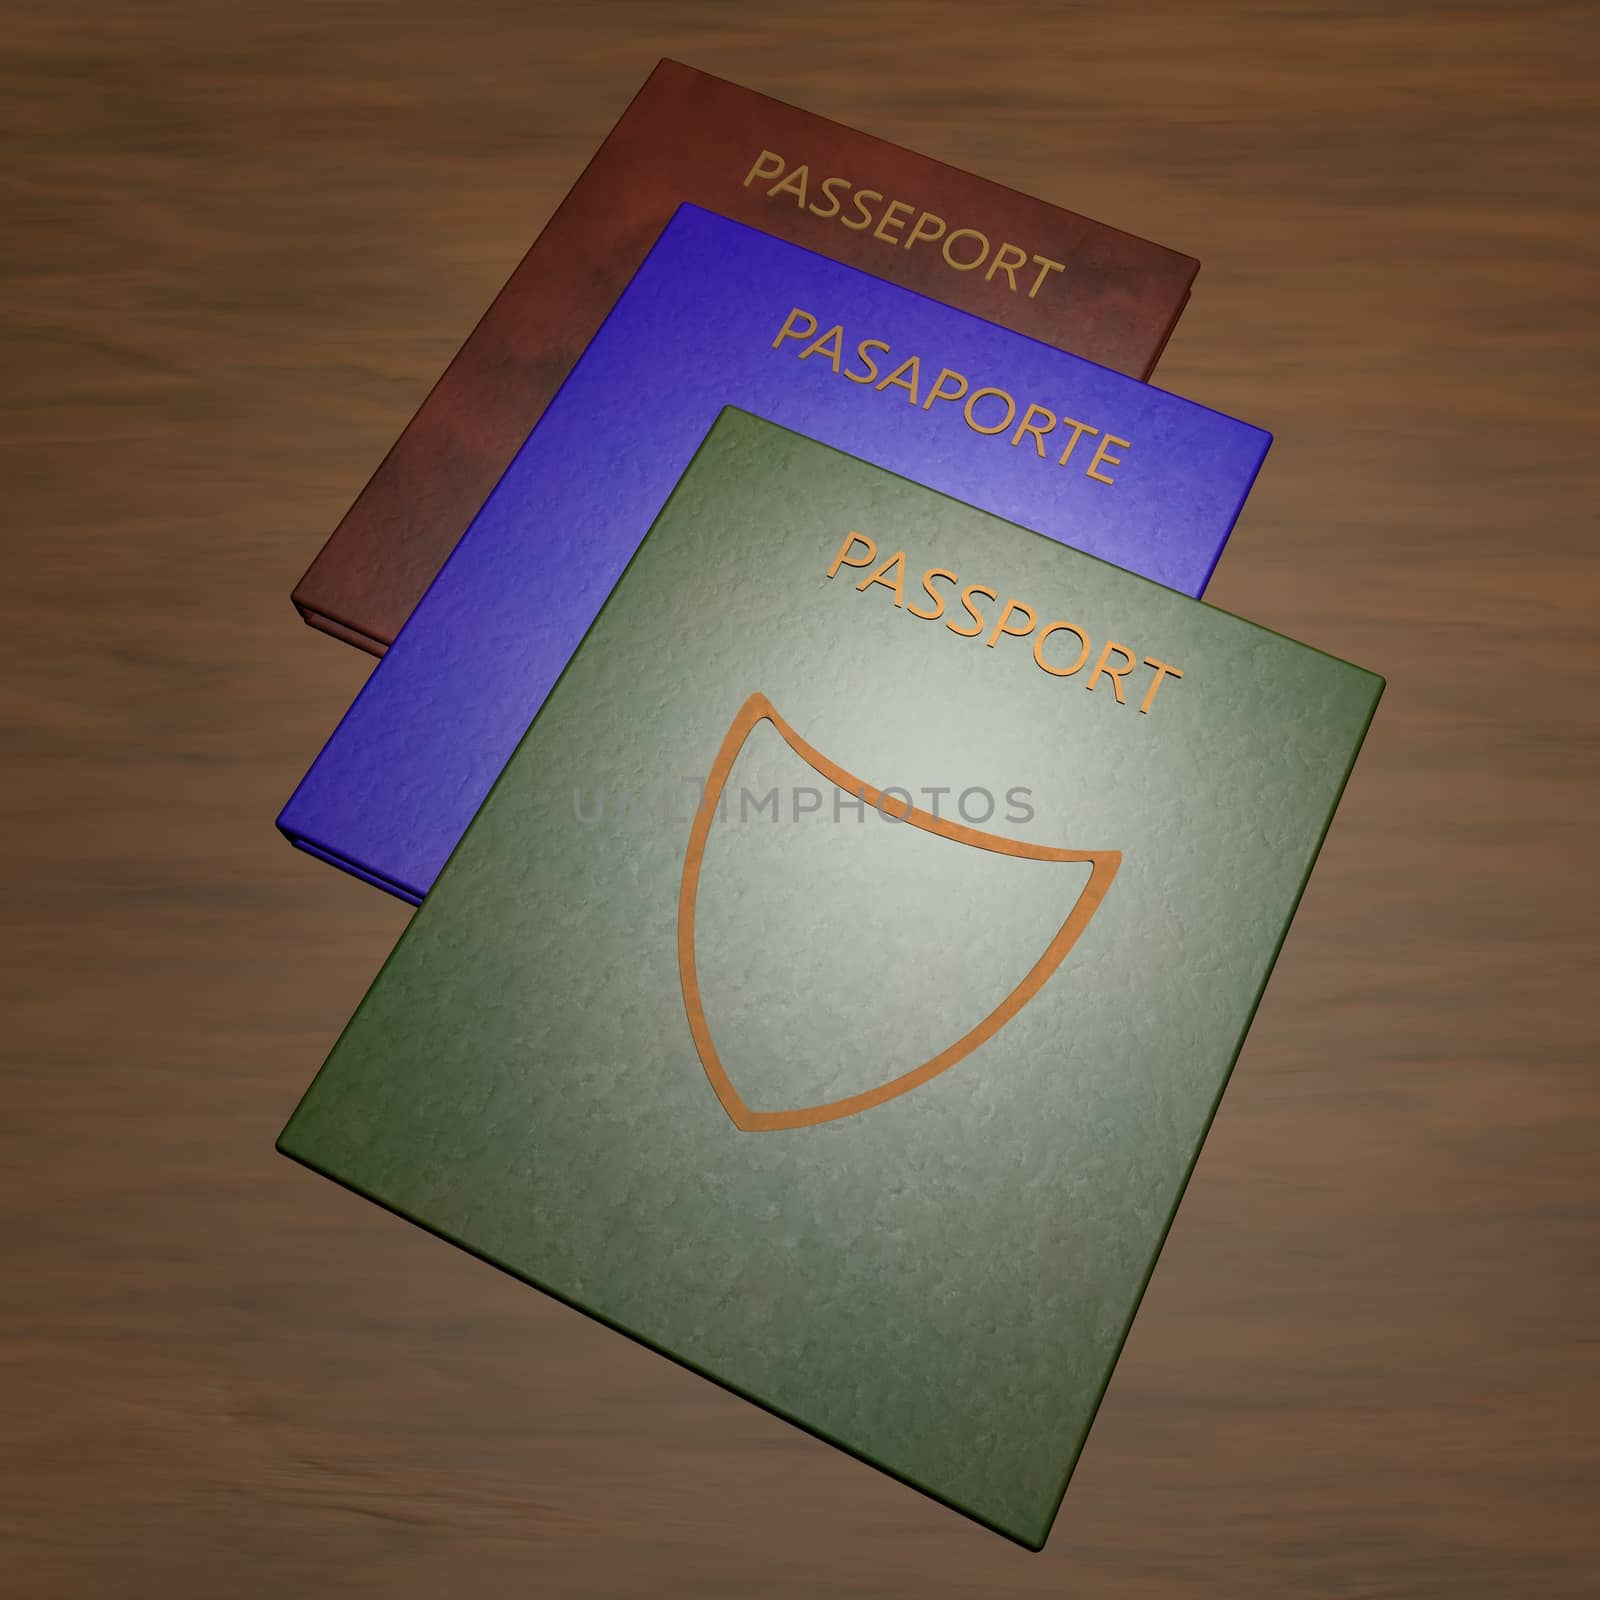 Passports by Koufax73